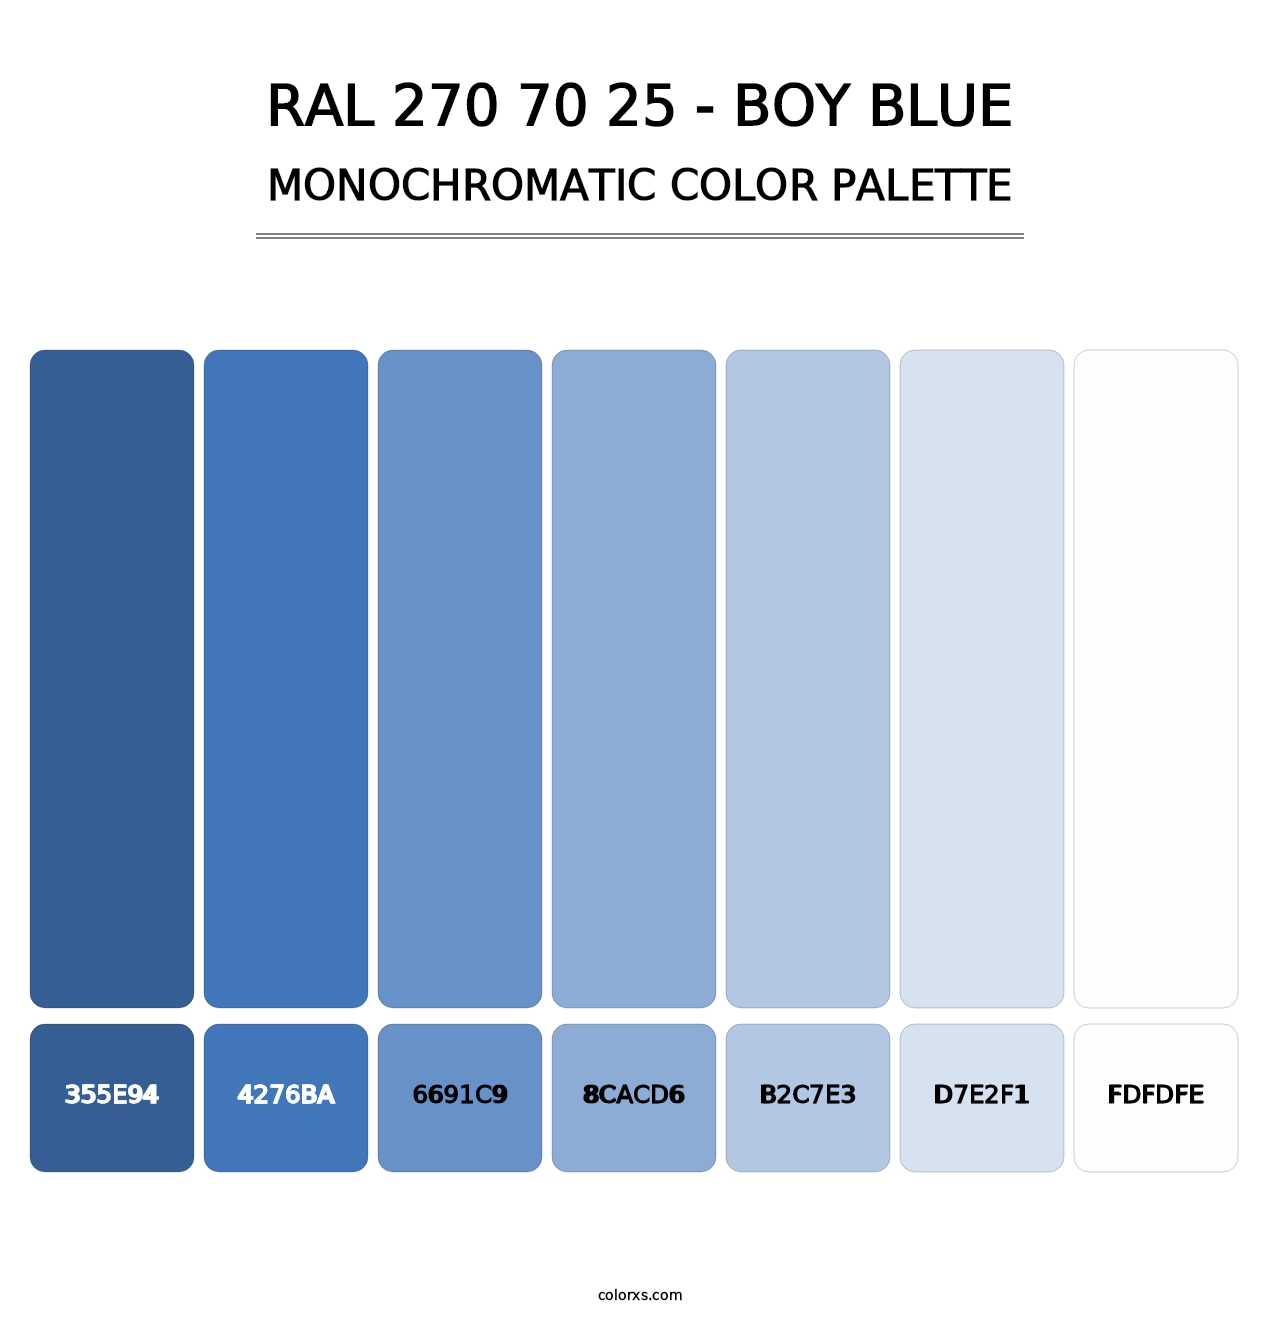 RAL 270 70 25 - Boy Blue - Monochromatic Color Palette